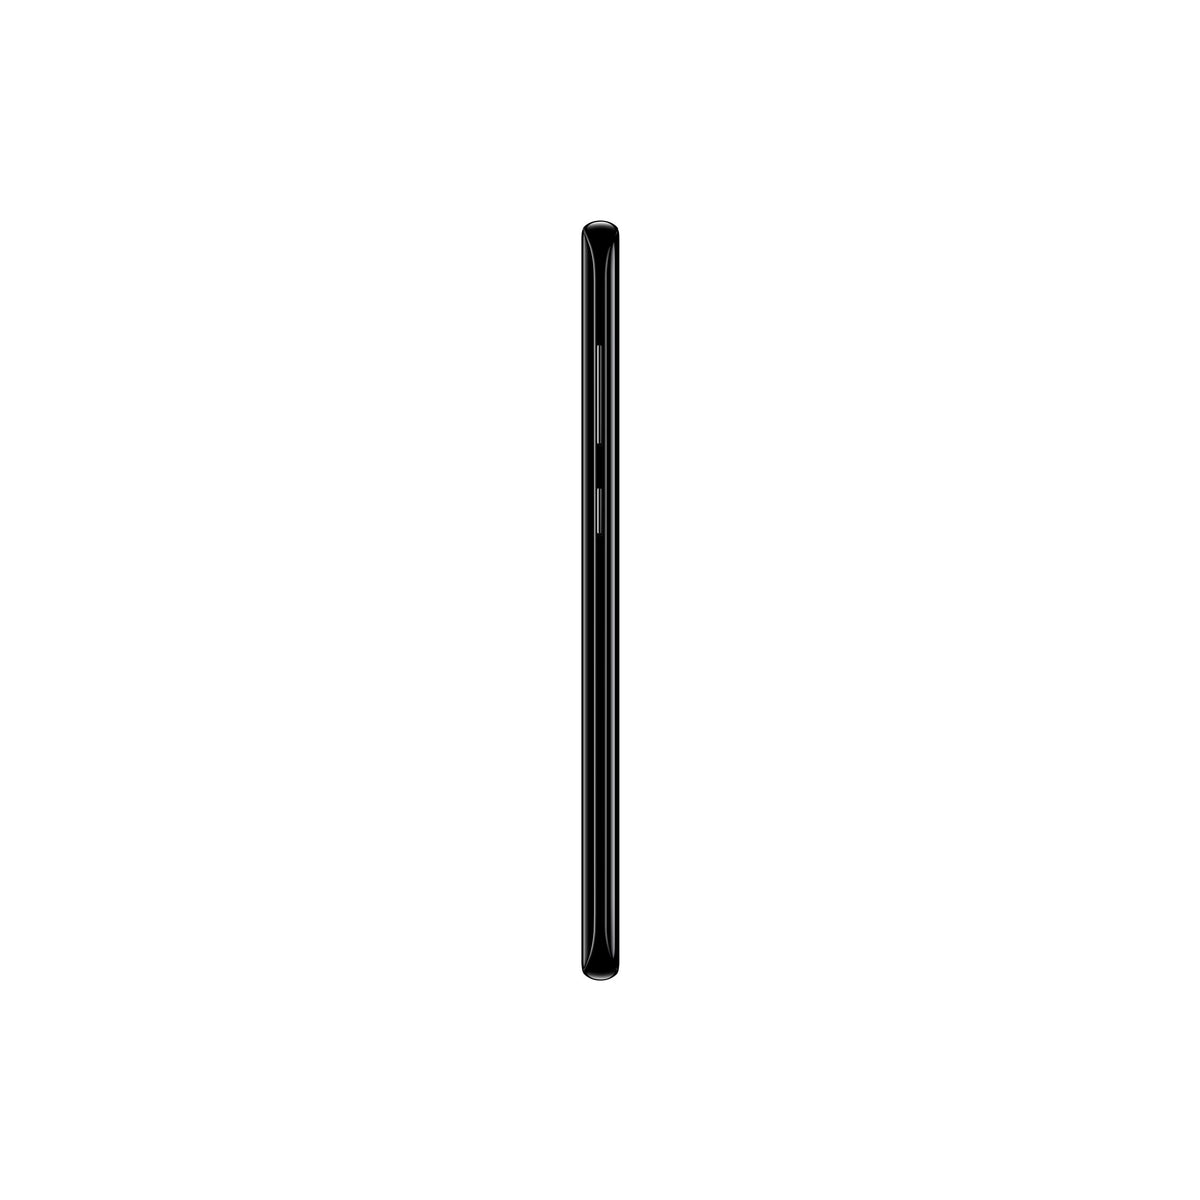 Mobilní telefon Samsung Galaxy S8+ 4GB/64GB, černá POUŽITÉ